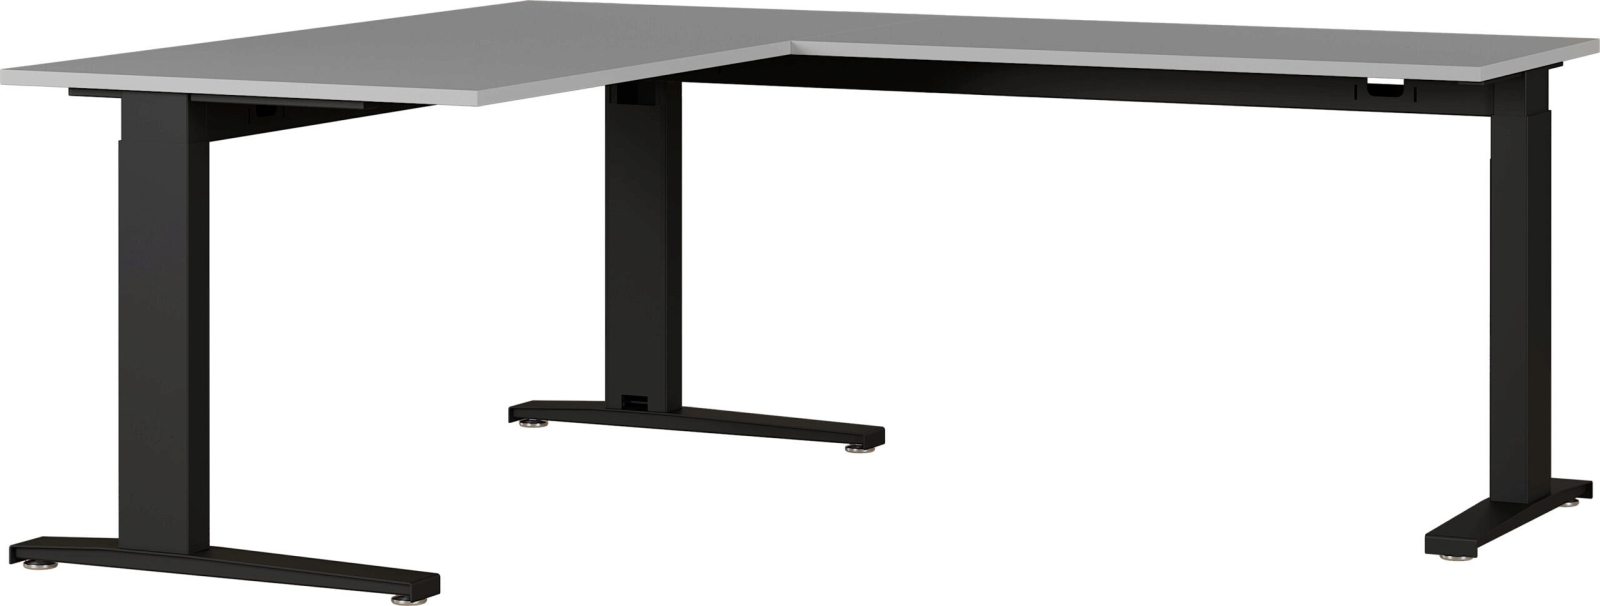 8513 höhenverstellbarer mechanischer Schreibtisch Arbeitstisch Bürotisch Büromöbel Winkelschreibtisch Lichtgrau/Silber oder SchwarzNachbildung